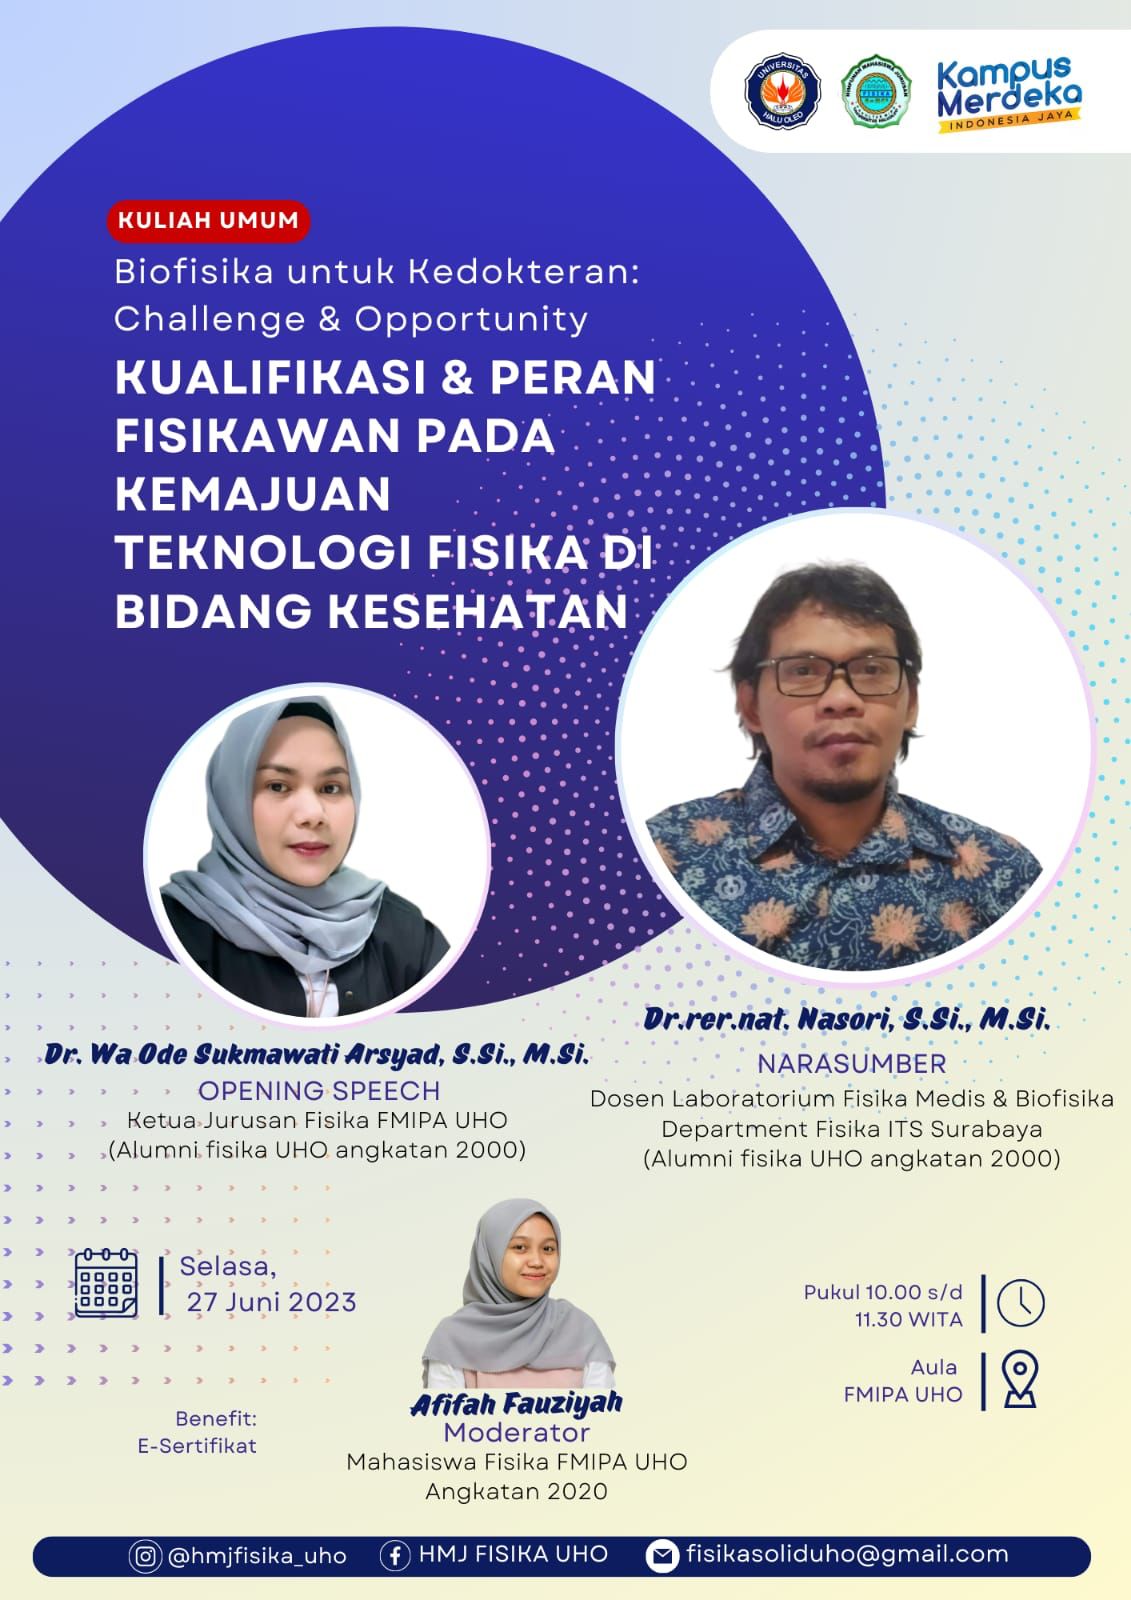 Seminar Bulanan (Edisi Juni) – Biofisika untuk Kedokteran: Challenge & Opportunity